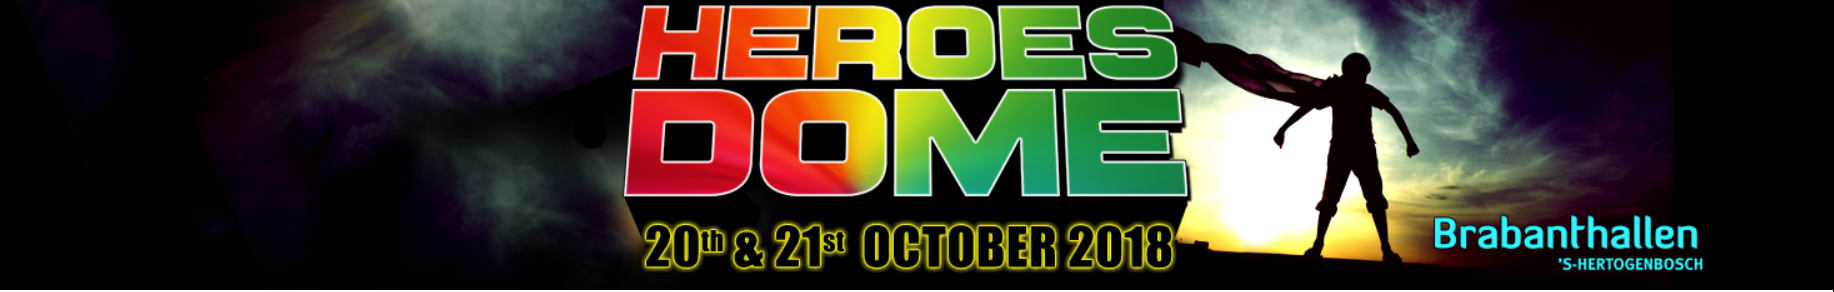 Heroesdome 2018 nieuw logo